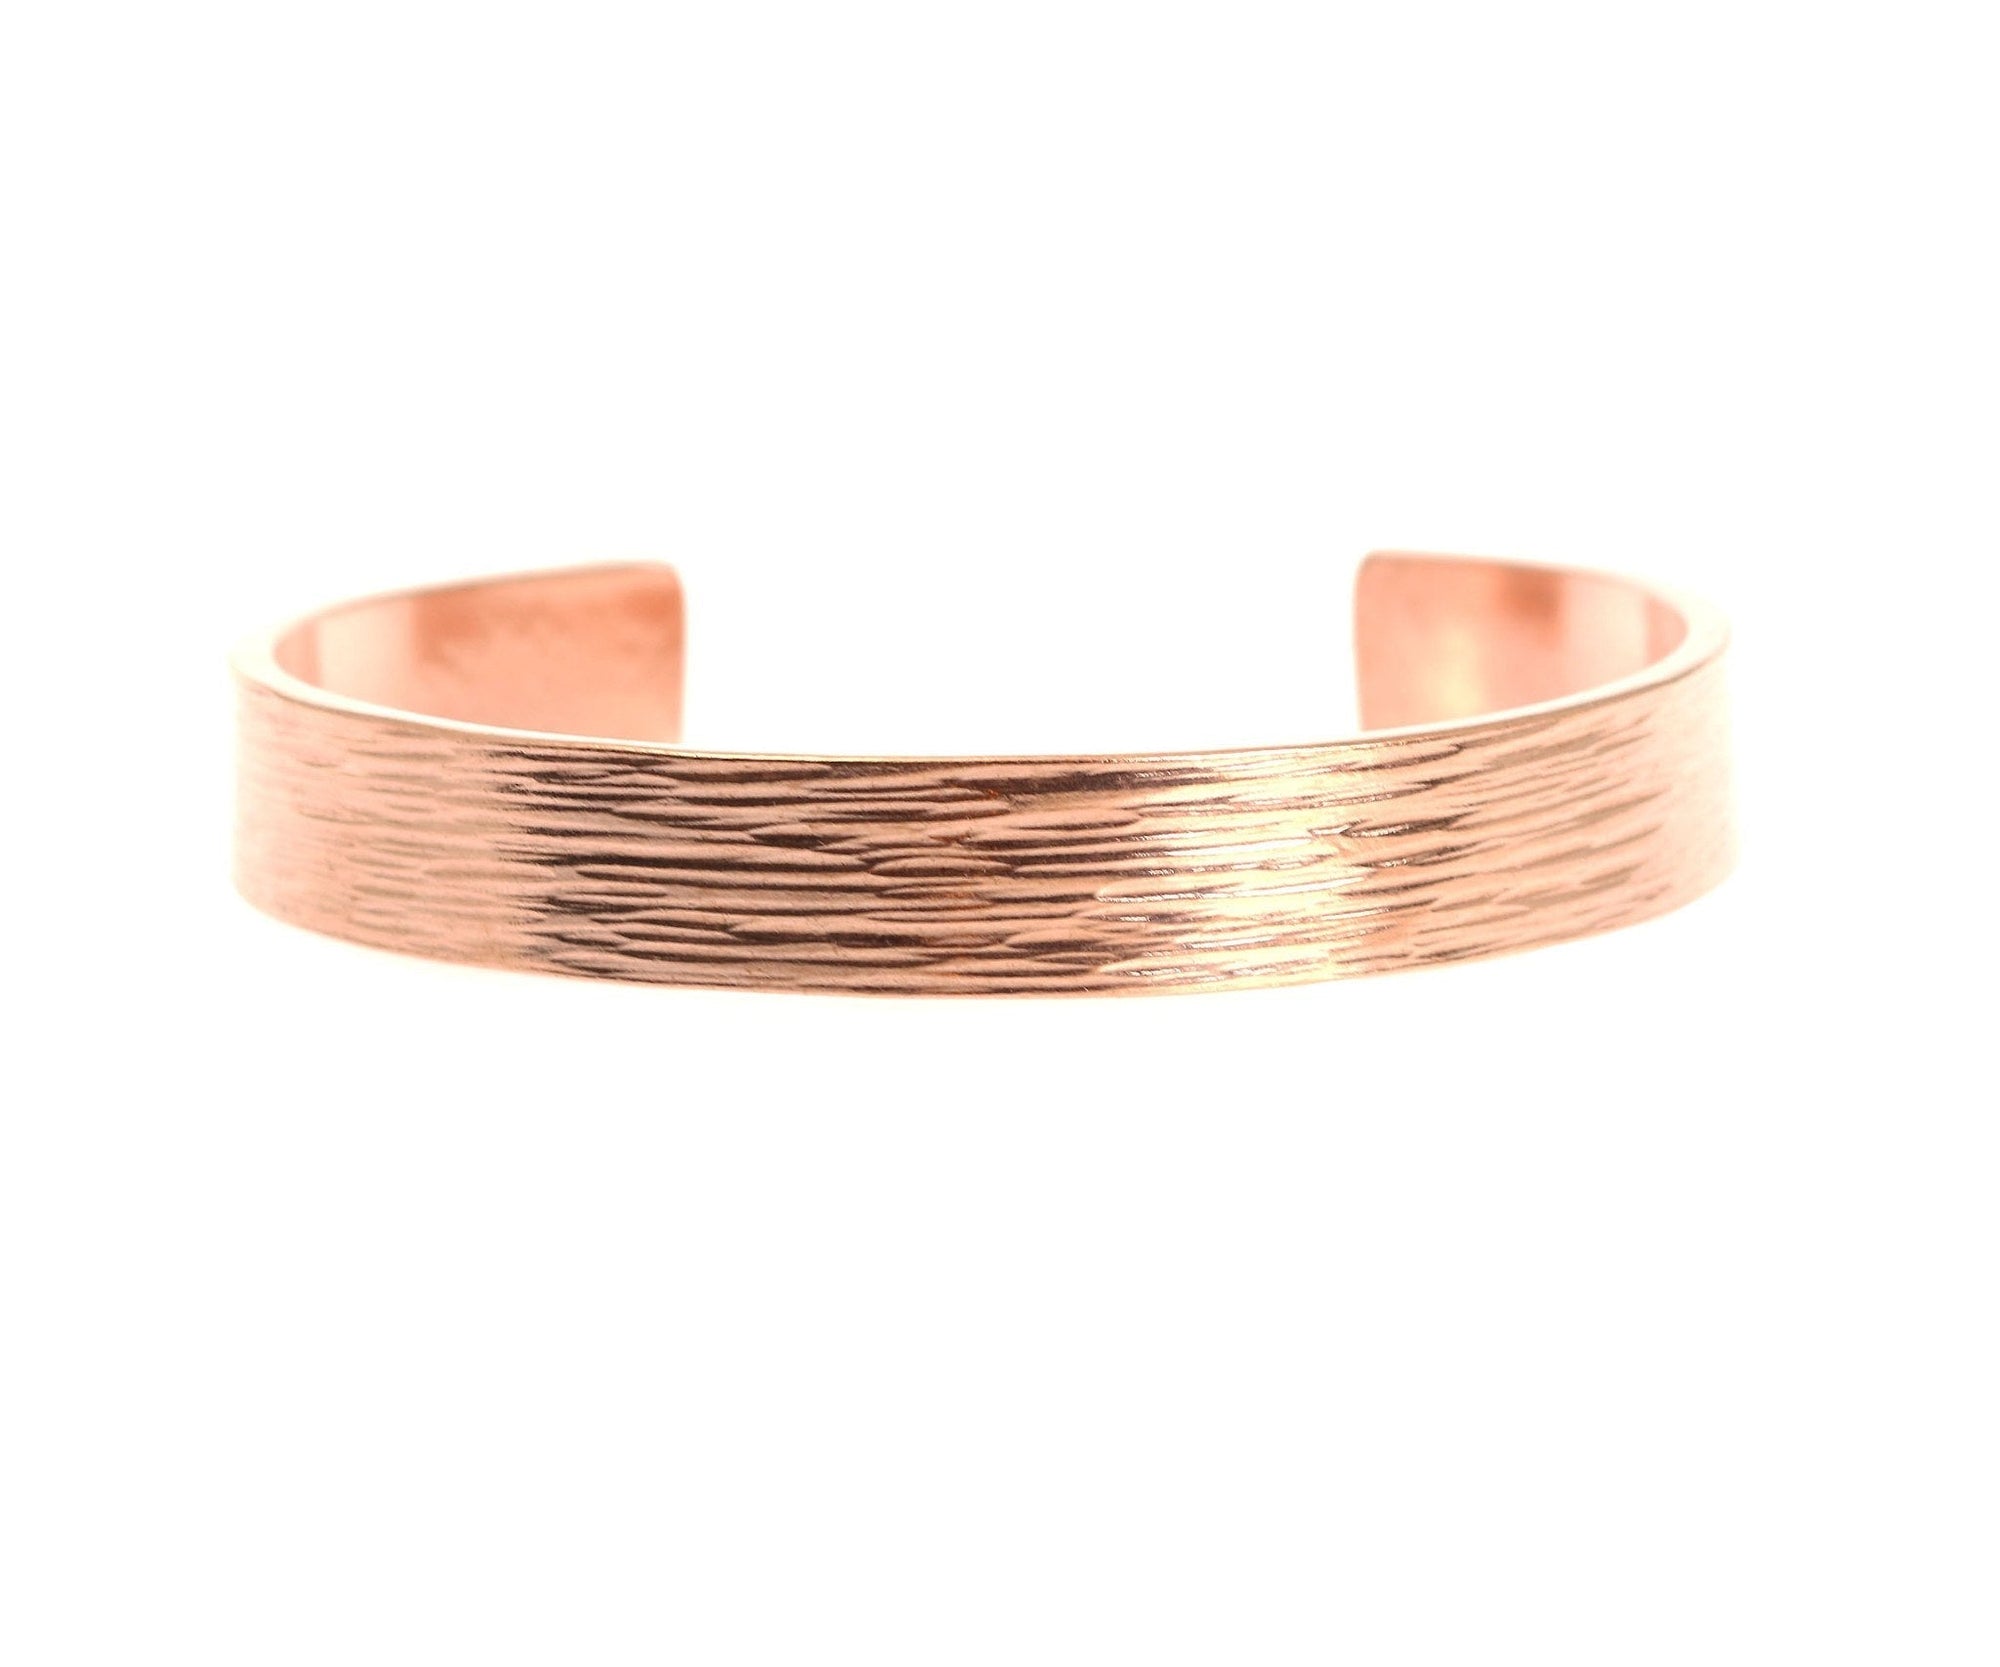 10mm Wide Bark Copper Cuff Bracelet - Copper Cuff Detail